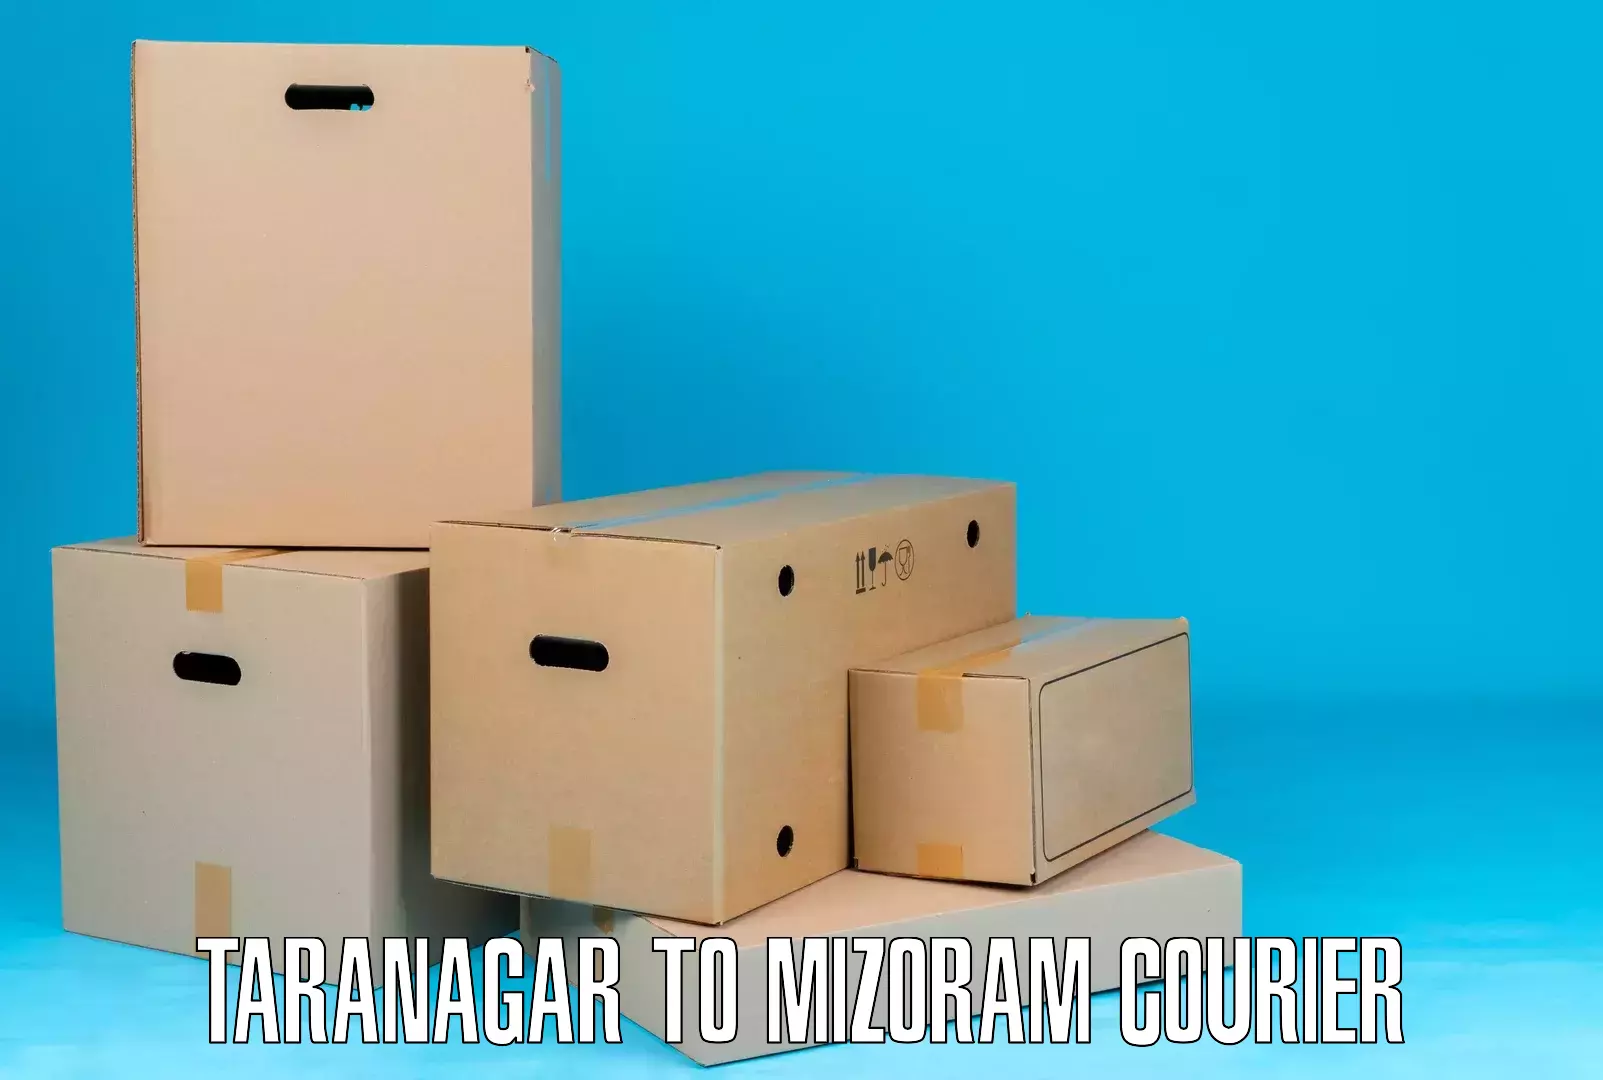 Premium courier solutions Taranagar to Thenzawl